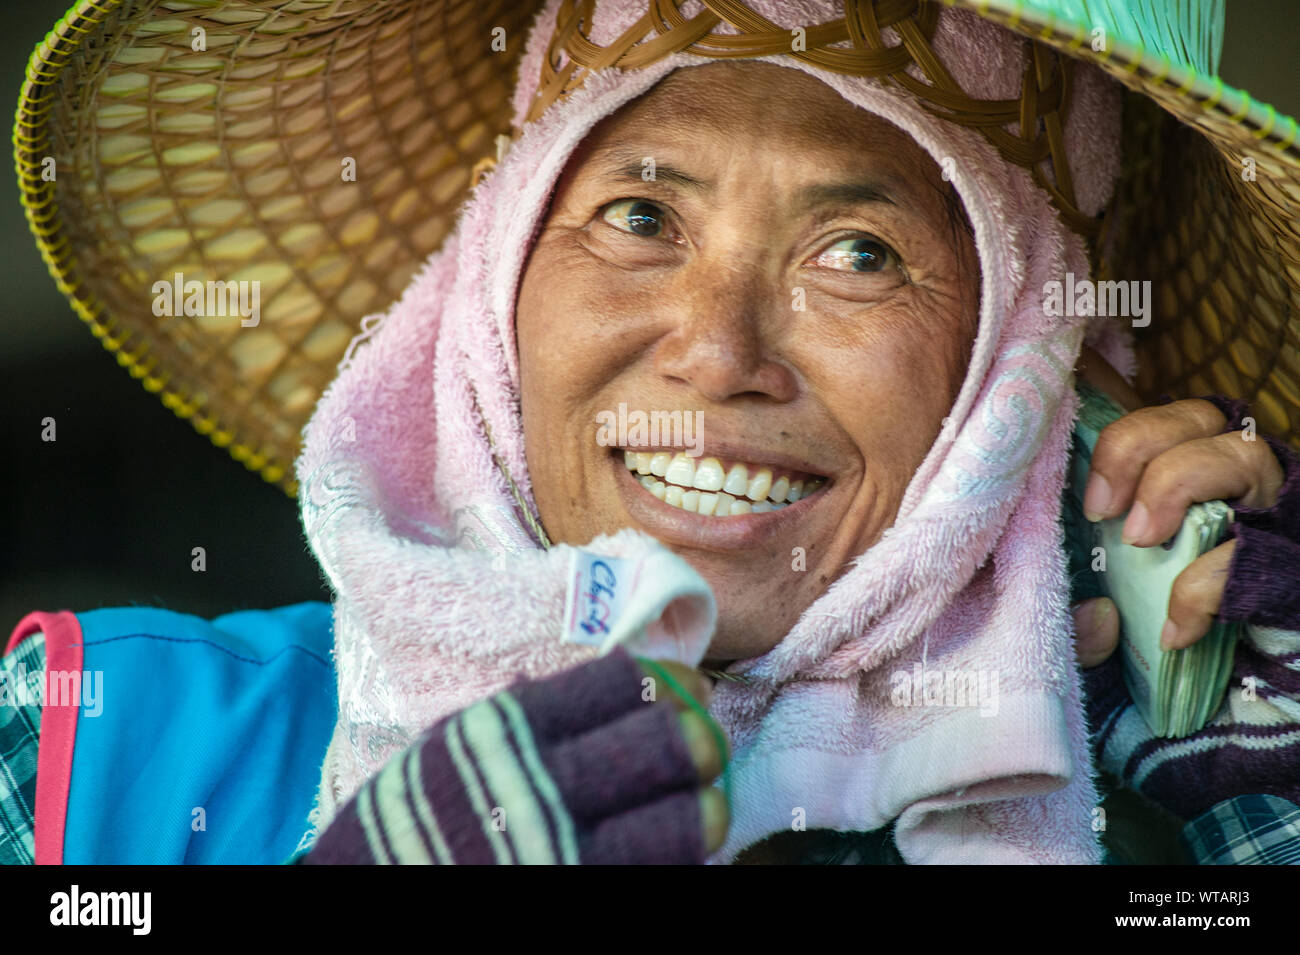 Street market worker wearing traditional oriental hat Stock Photo